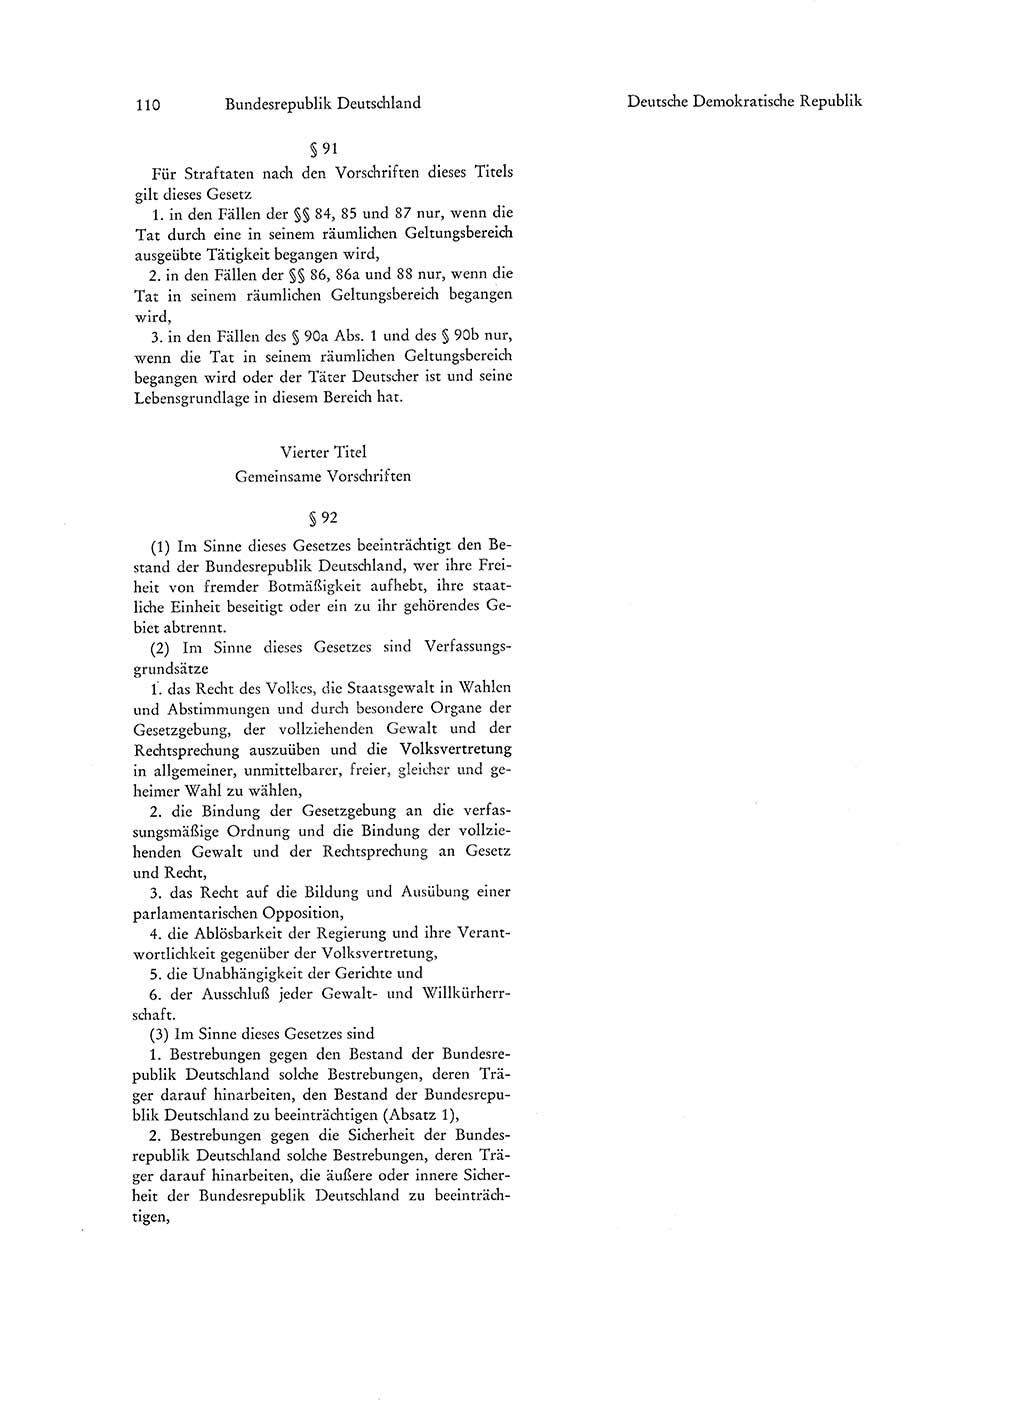 Strafgesetzgebung in Deutschland [Bundesrepublik Deutschland (BRD) und Deutsche Demokratische Republik (DDR)] 1972, Seite 110 (Str.-Ges. Dtl. StGB BRD DDR 1972, S. 110)